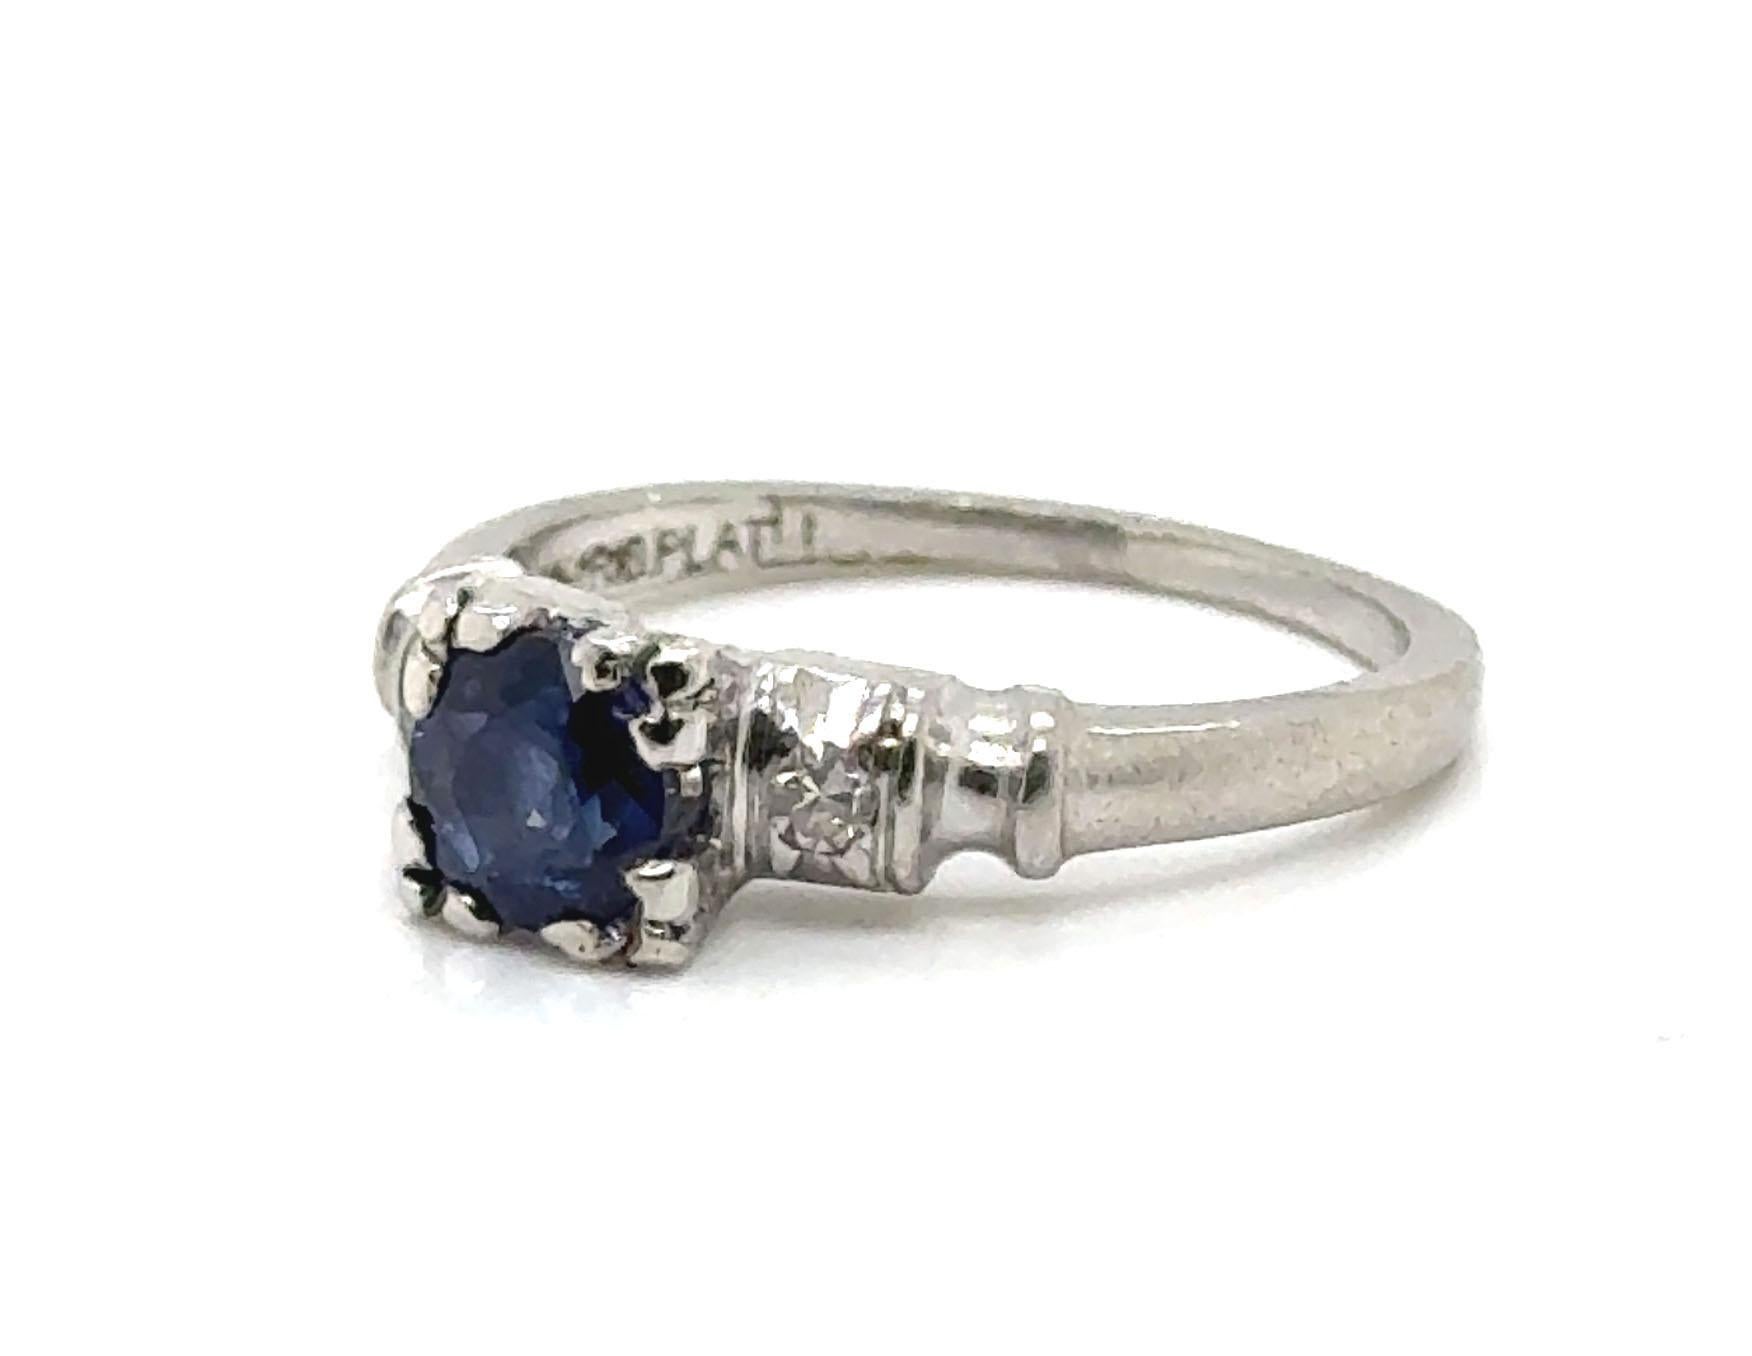 Echtes Original Art Deco Antike aus den 1930er-1940er Jahren Saphir und Diamant Ring .67ct Vintage By Platin


Verfügt über eine echte .63ct Natural Blue Round Sapphire in der Mitte

Mit seinem einzigartigen Charme dient dieser Ring als perfekte